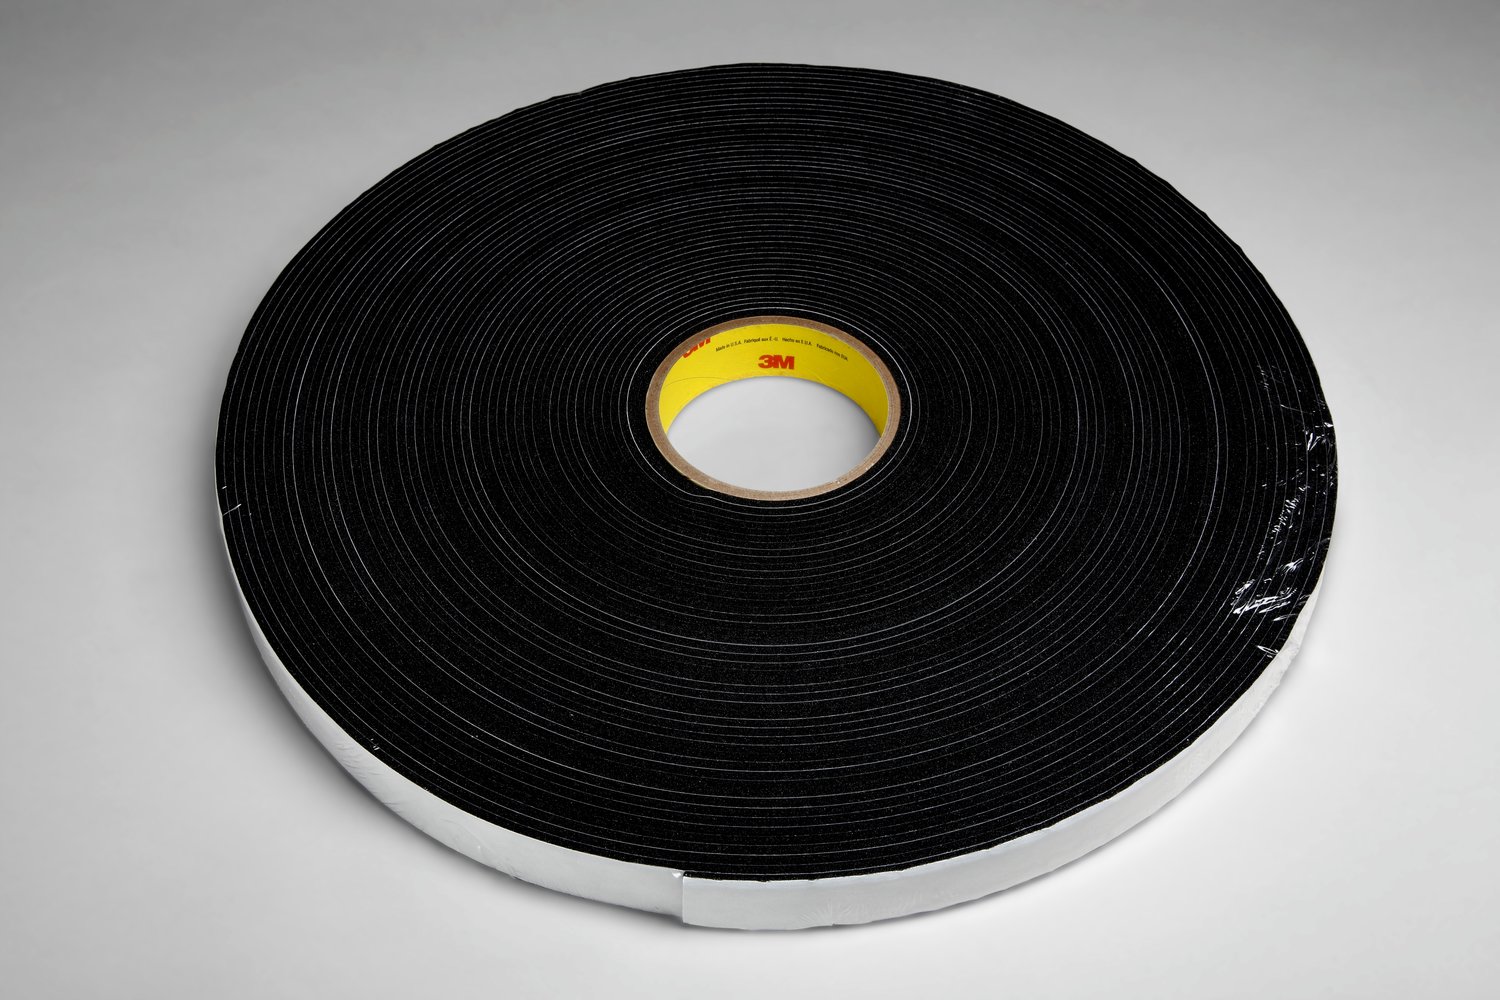 7100050117 - 3M Vinyl Foam Tape 4718, Black, 2 in x 36 yd, 125 mil, 6 rolls per case